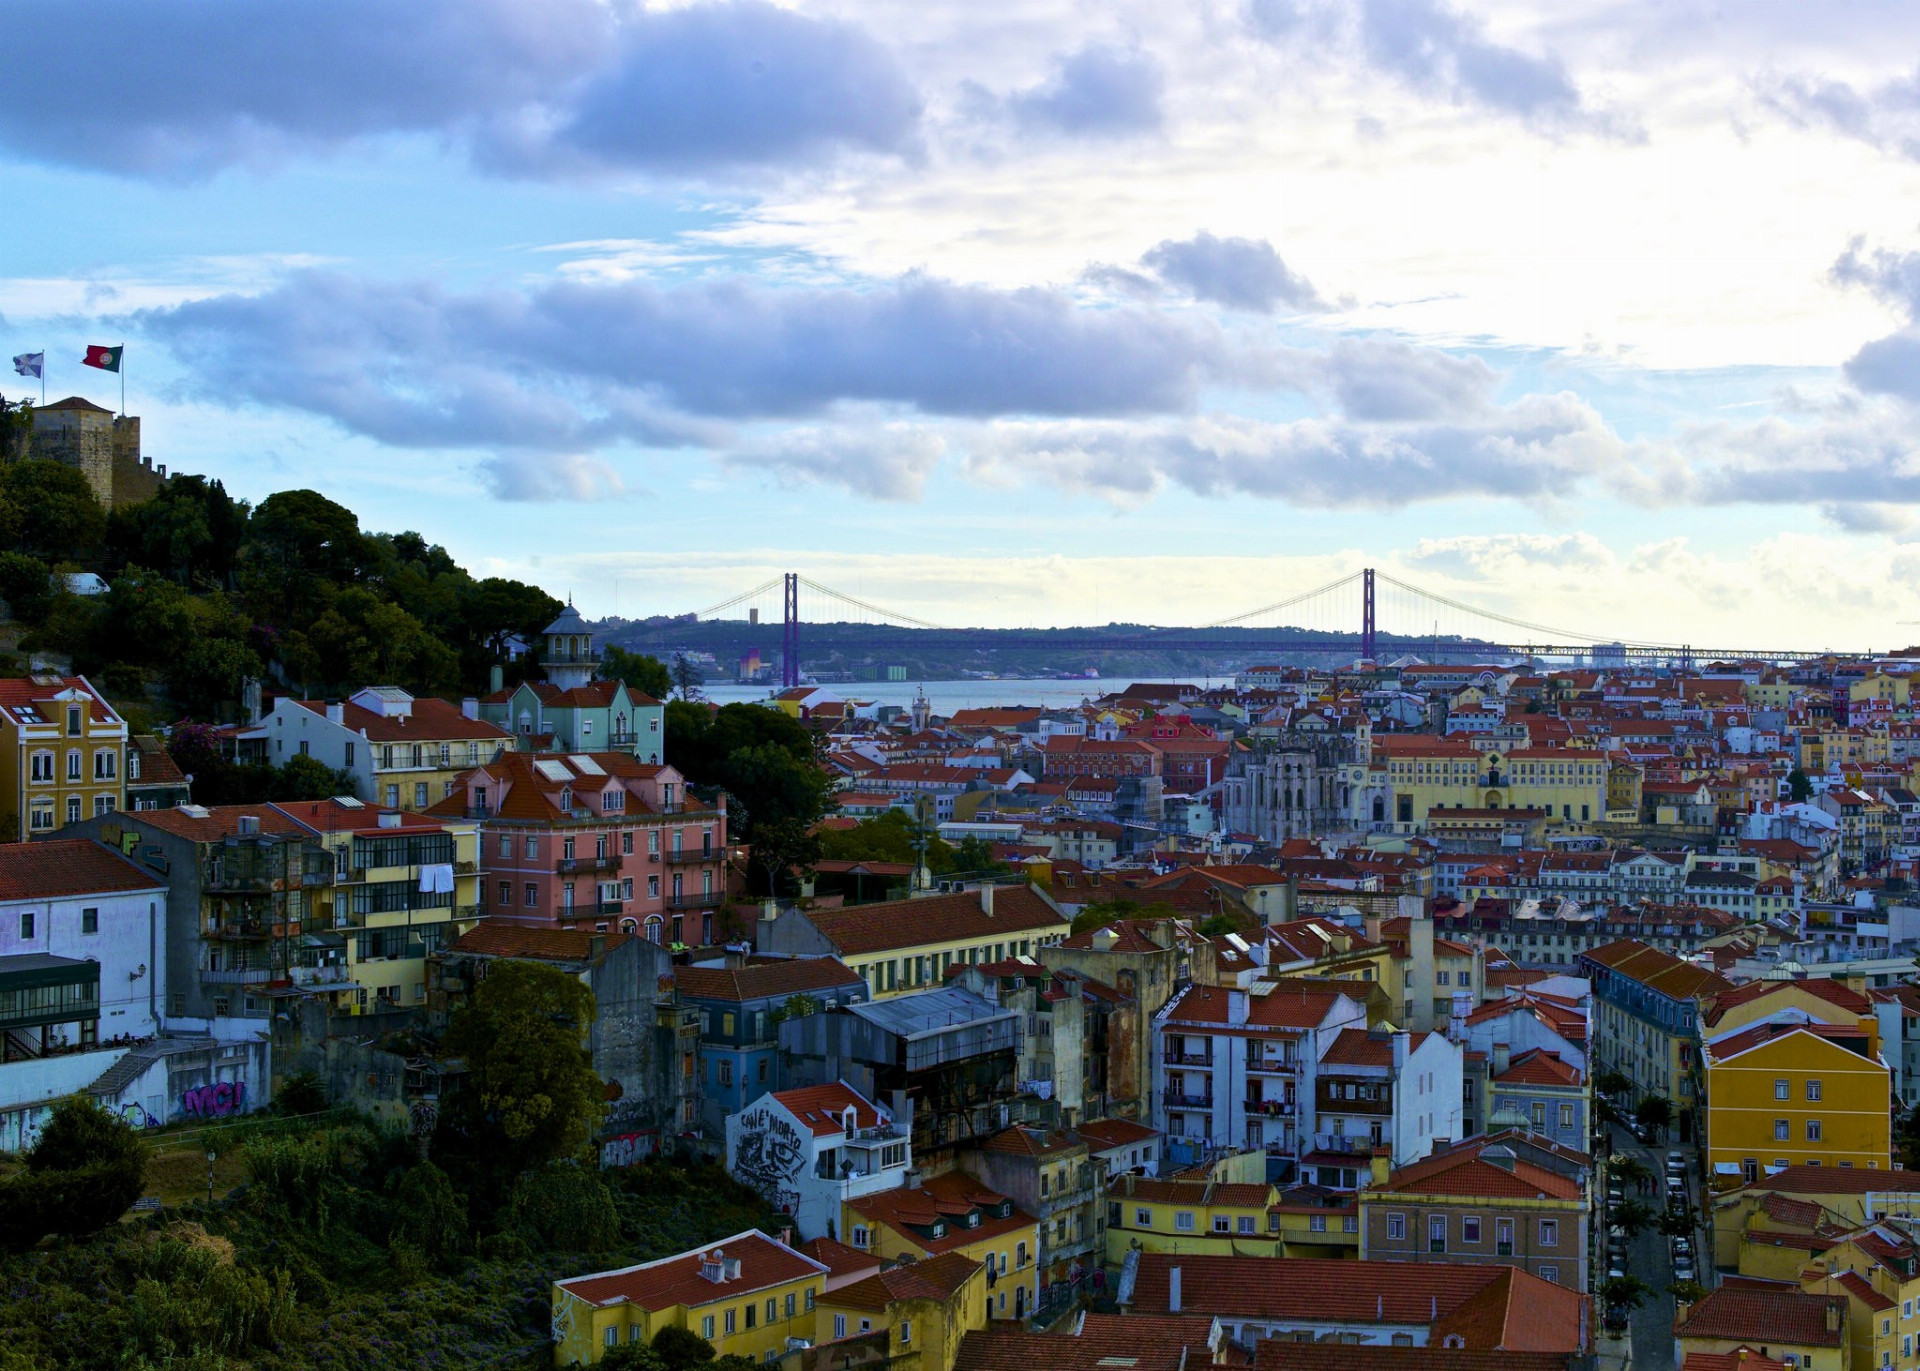 Lisabon láka svojimi romantickými výhľadmi na rieku a historickými električkami. Očarujúce pláže v regióne Algarve, kúzelné mestá Coimbra, Aveiro a Porto a čarovné vinice vás určite tak skoro v Portugalsku neomrzia. Ceny sú veľmi rozumné – káva za 60 centov nie je mýtus.